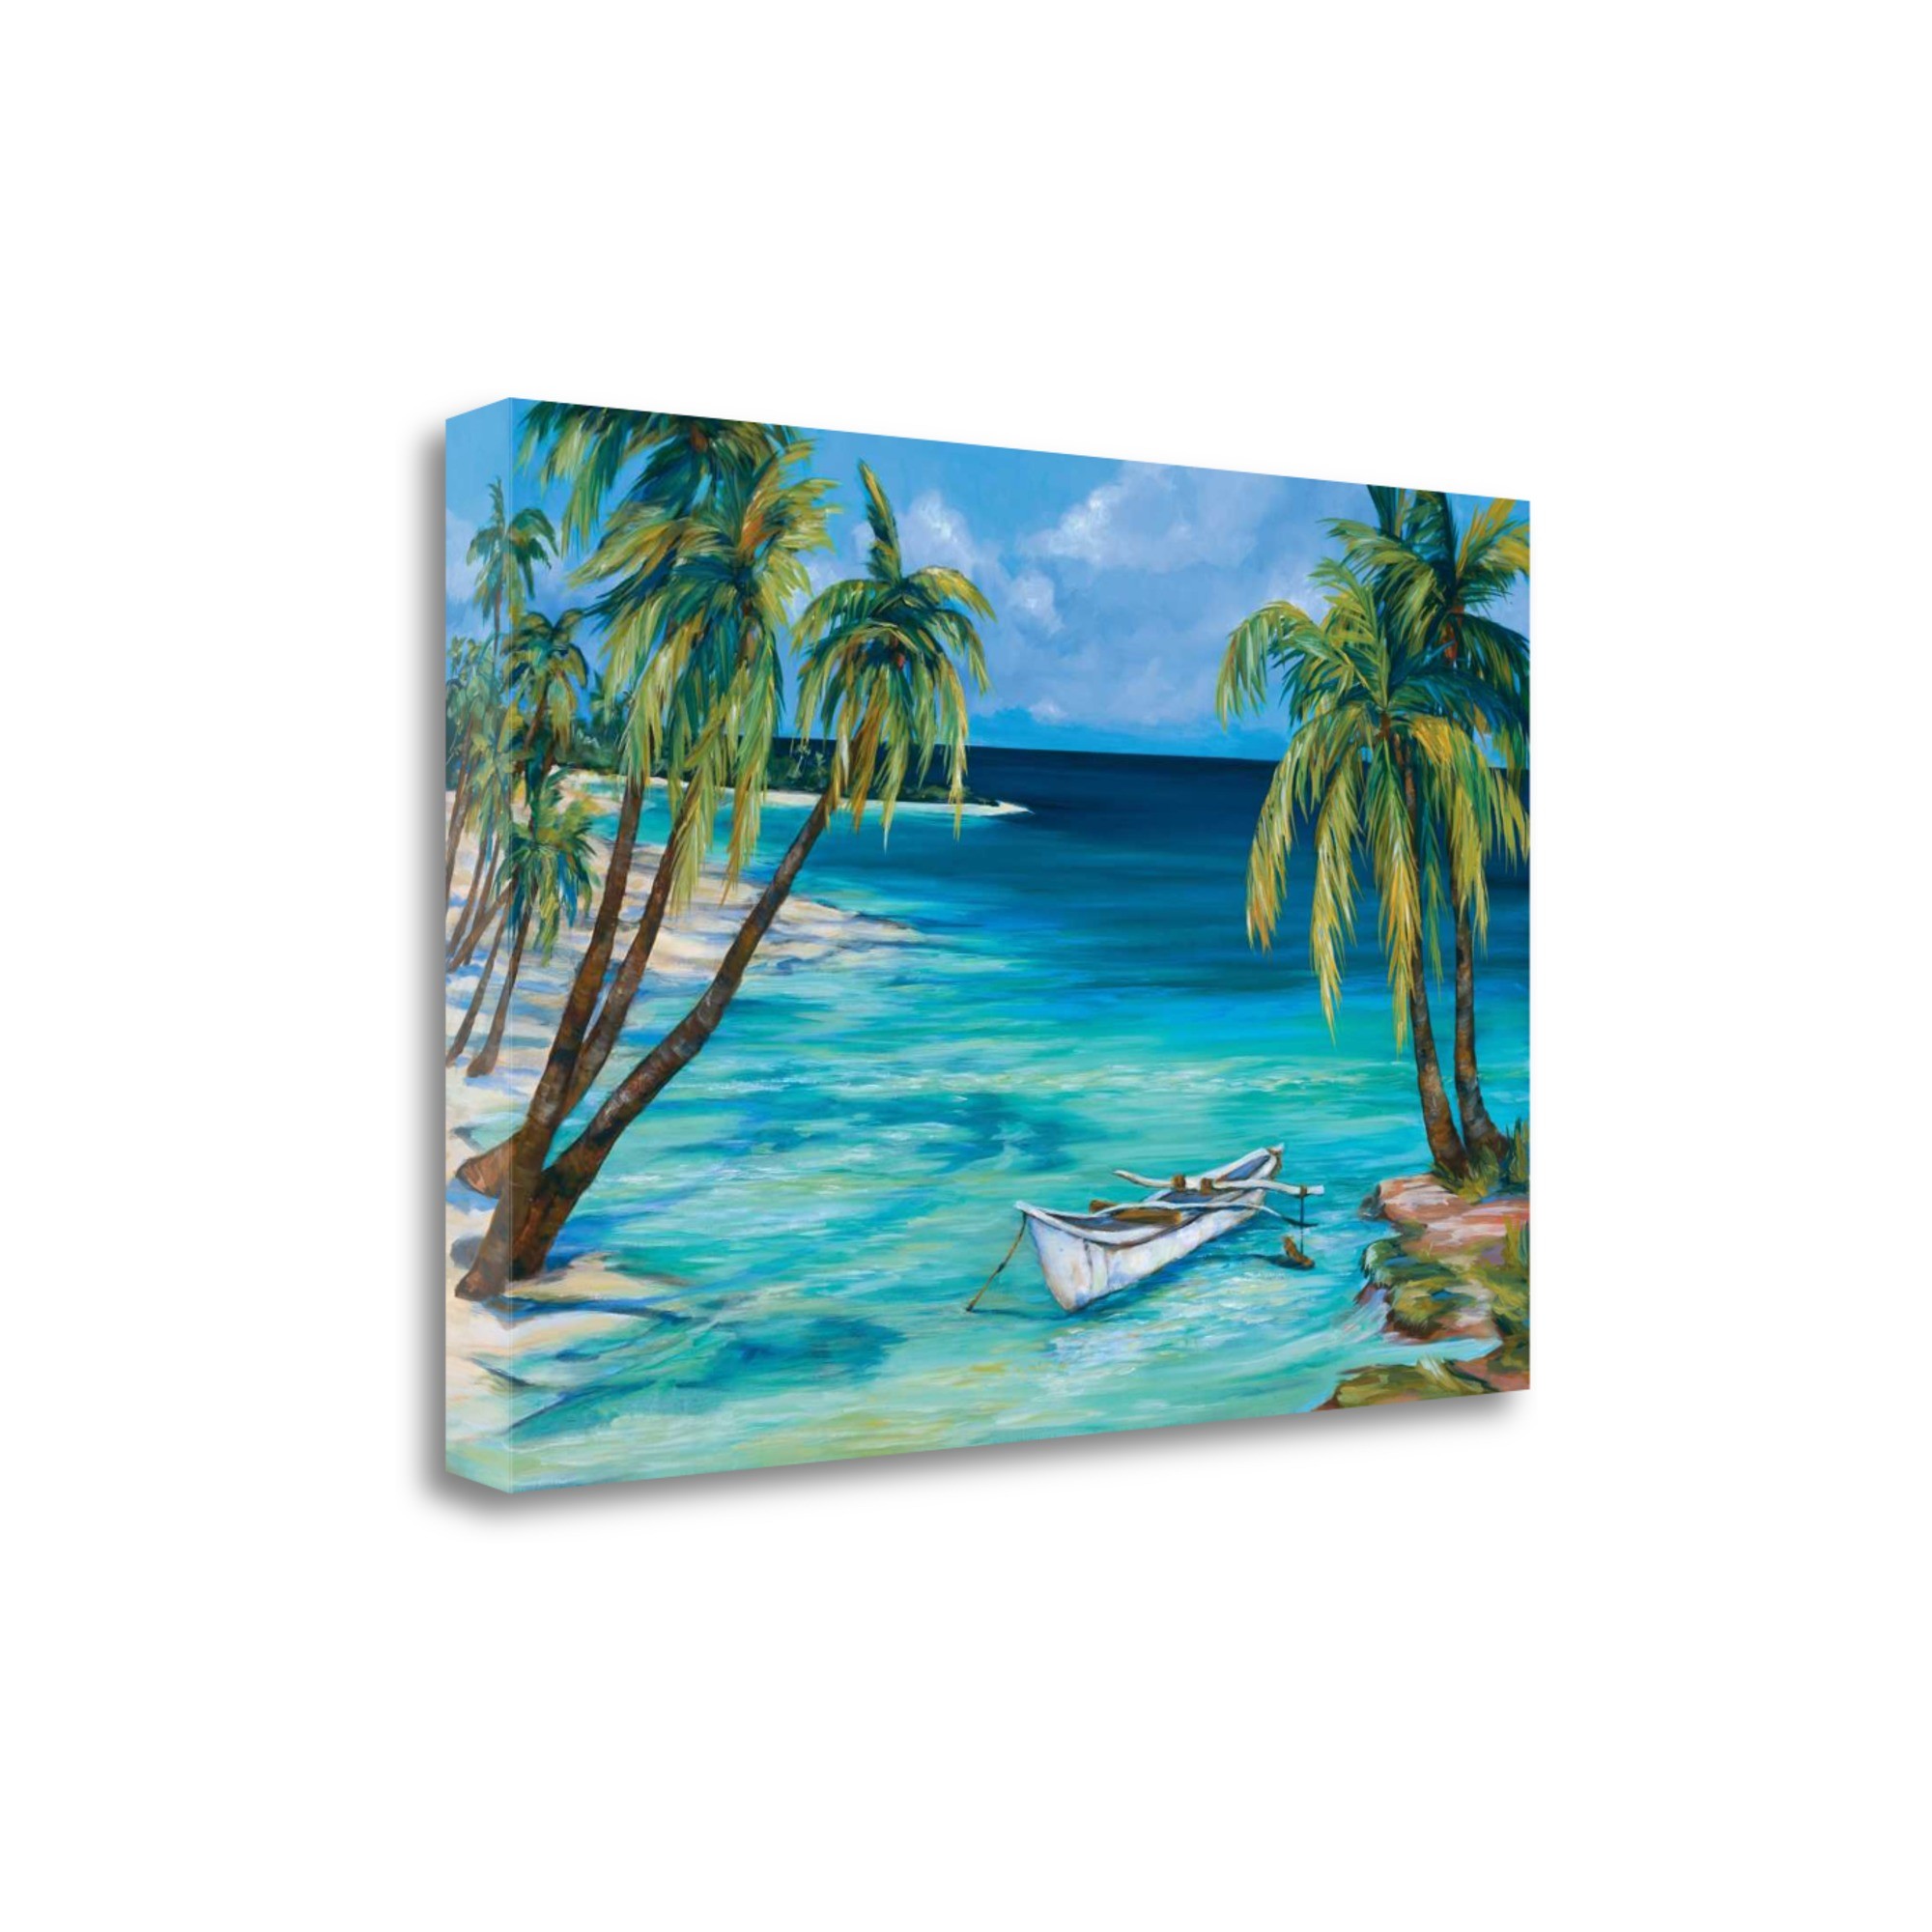 Tropical Beach View 5 Giclee Wrap Canvas Wall Art